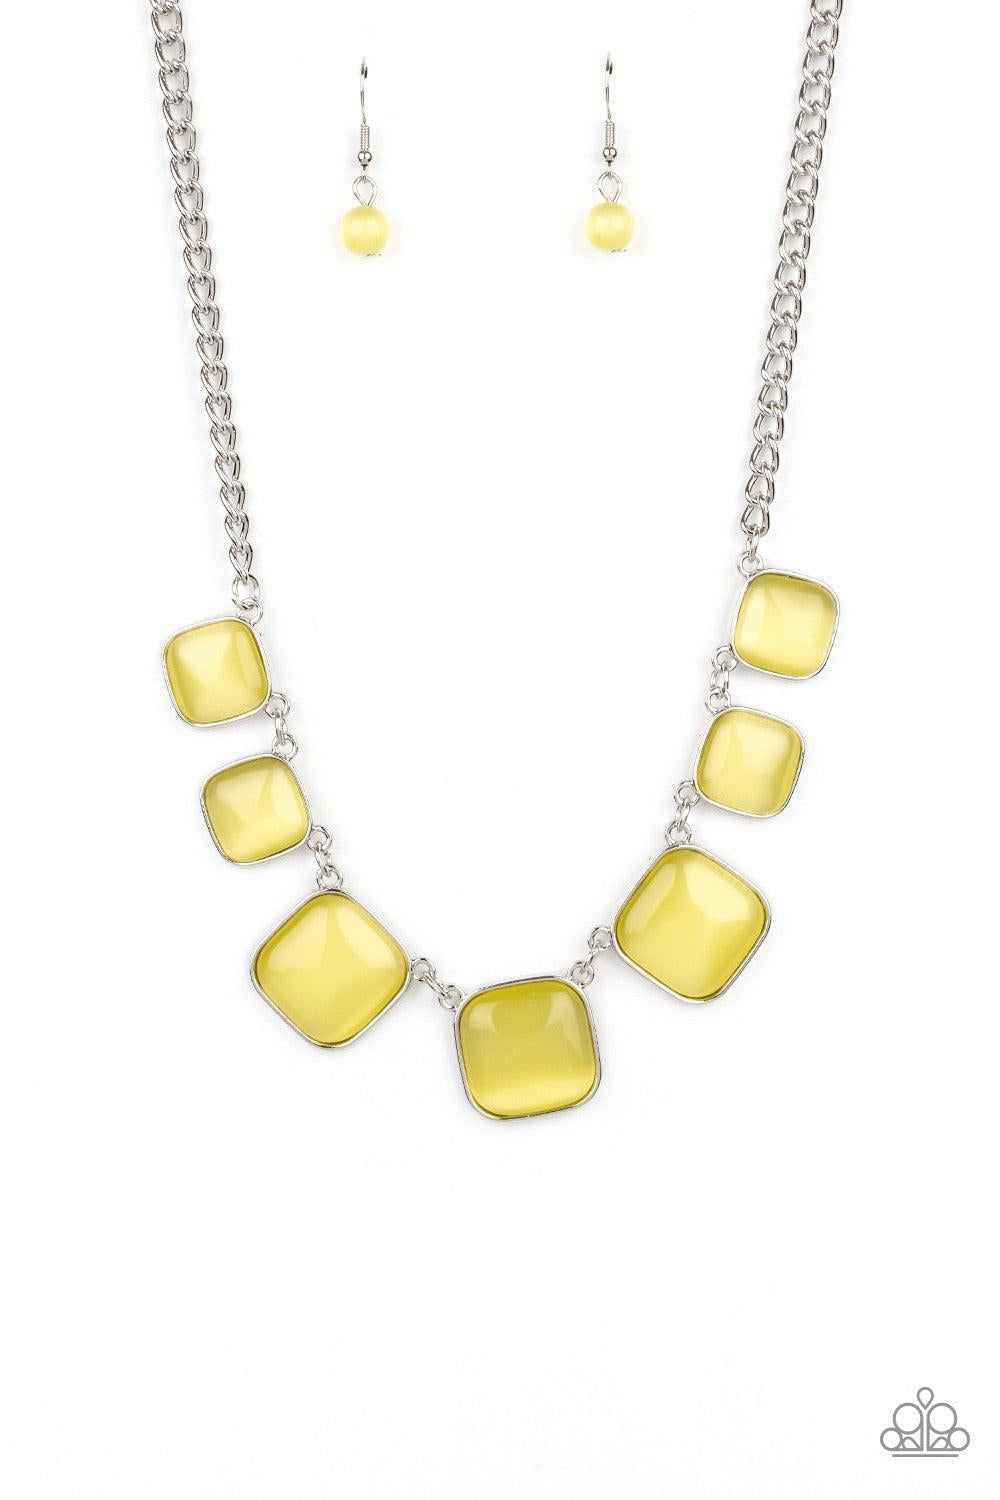 Yellow Paparazzi Jewelry-CarasShop.com - $5 Jewelry by Cara Jewels